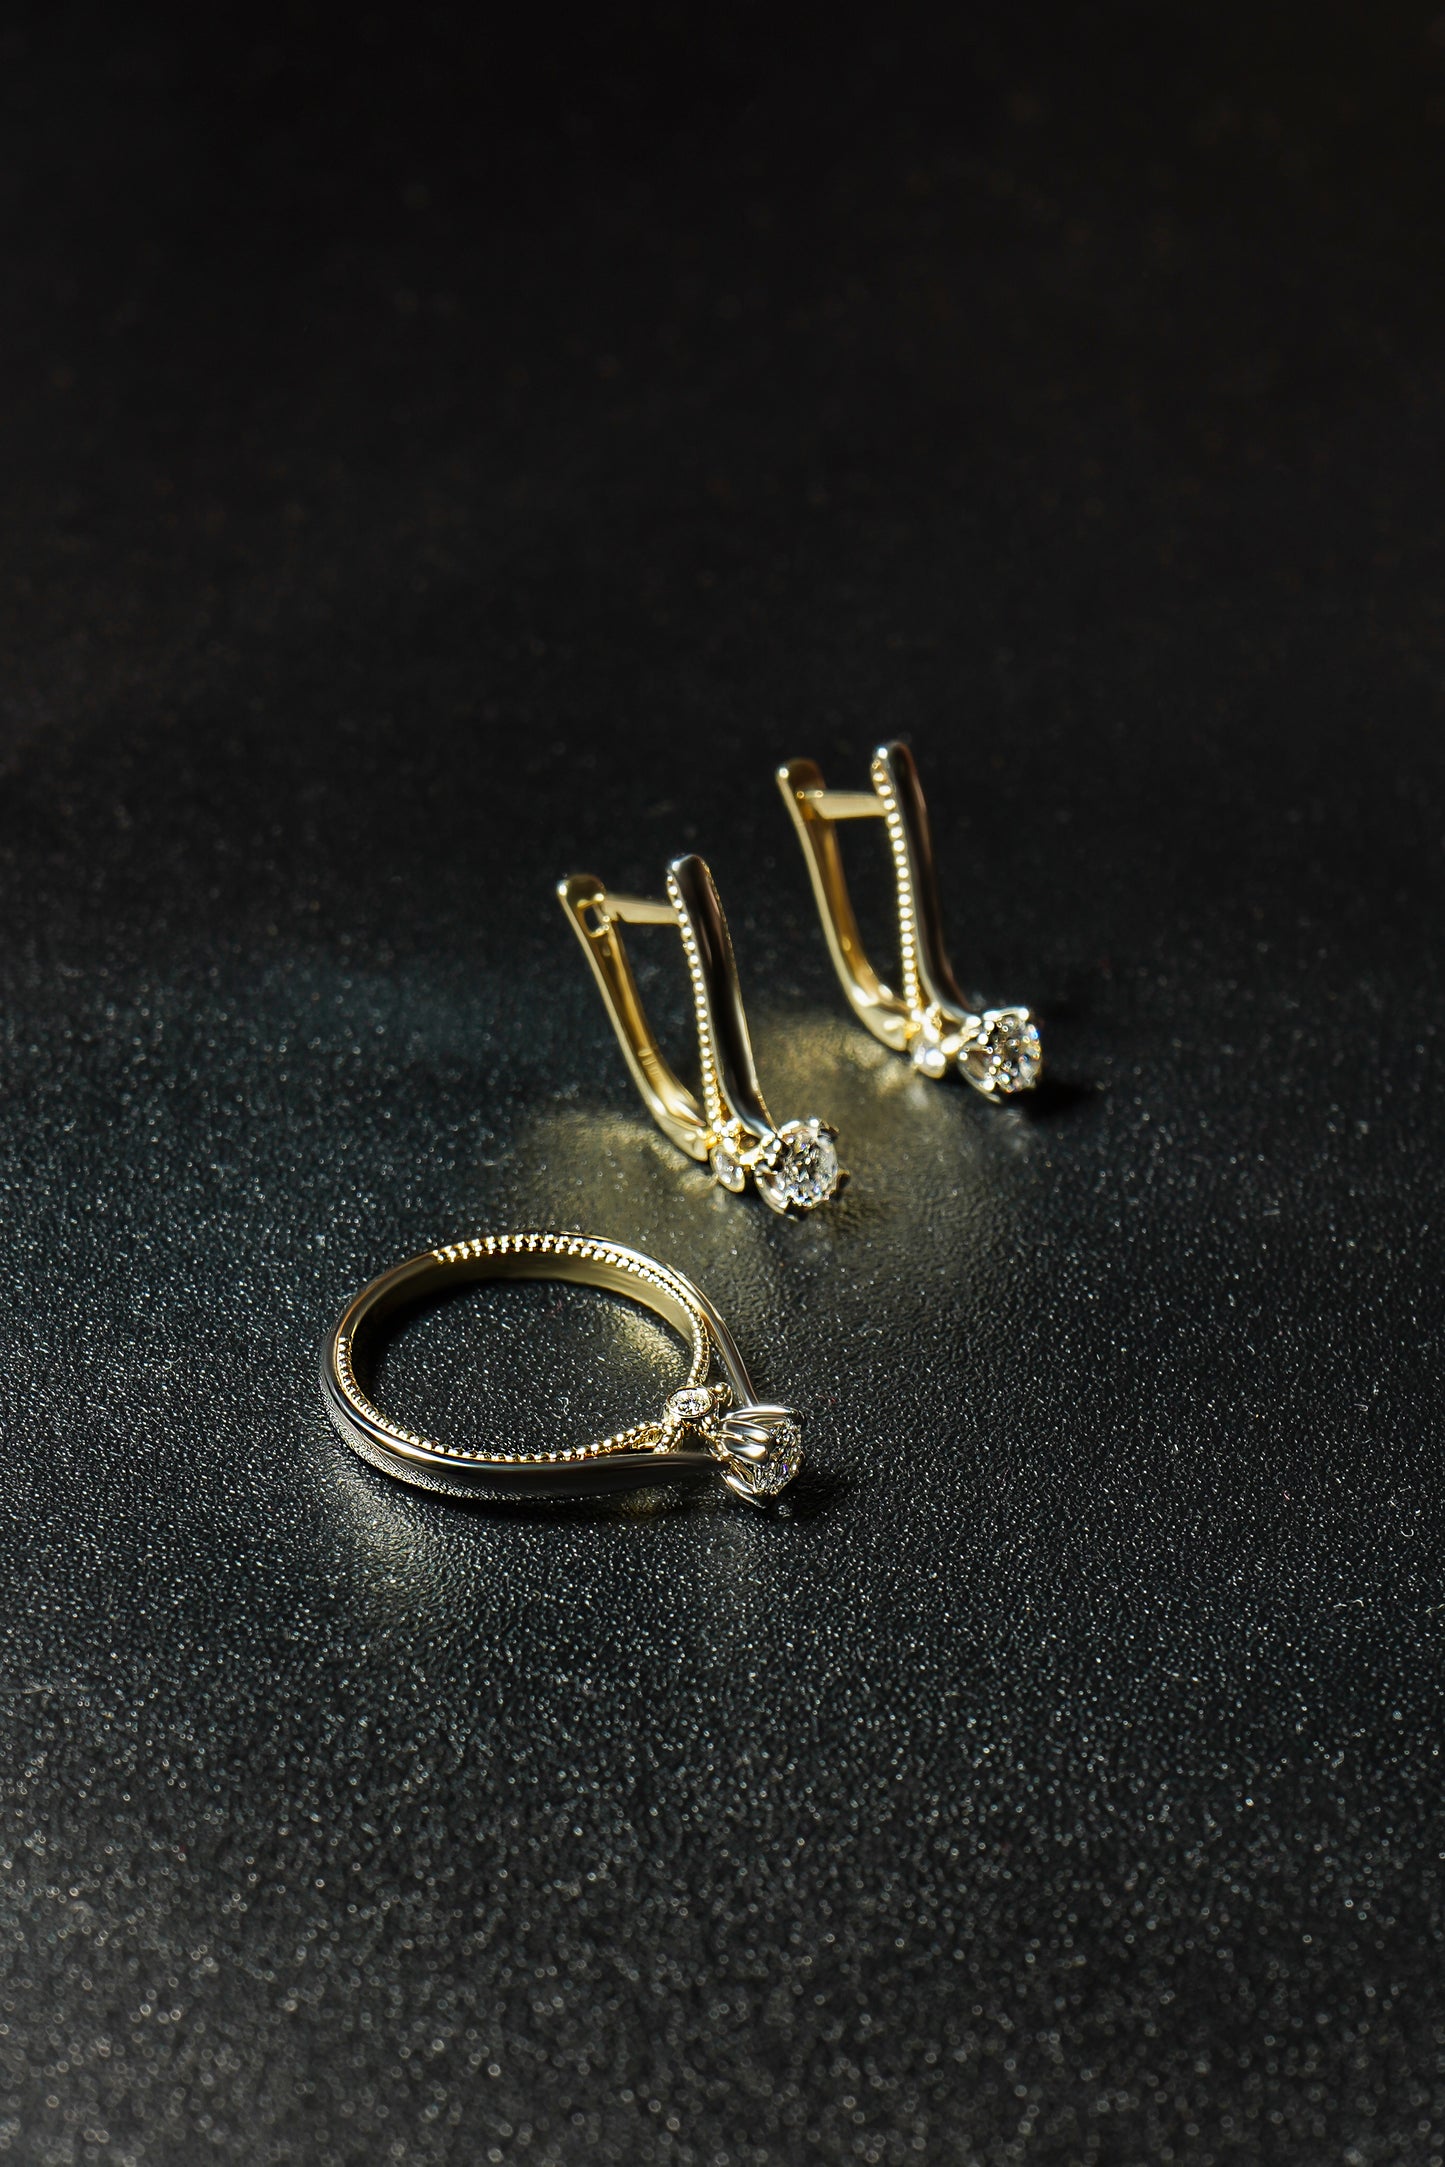 Сережки та каблучка з комбінованого золота з діамантами. Зображені на чорному фоні